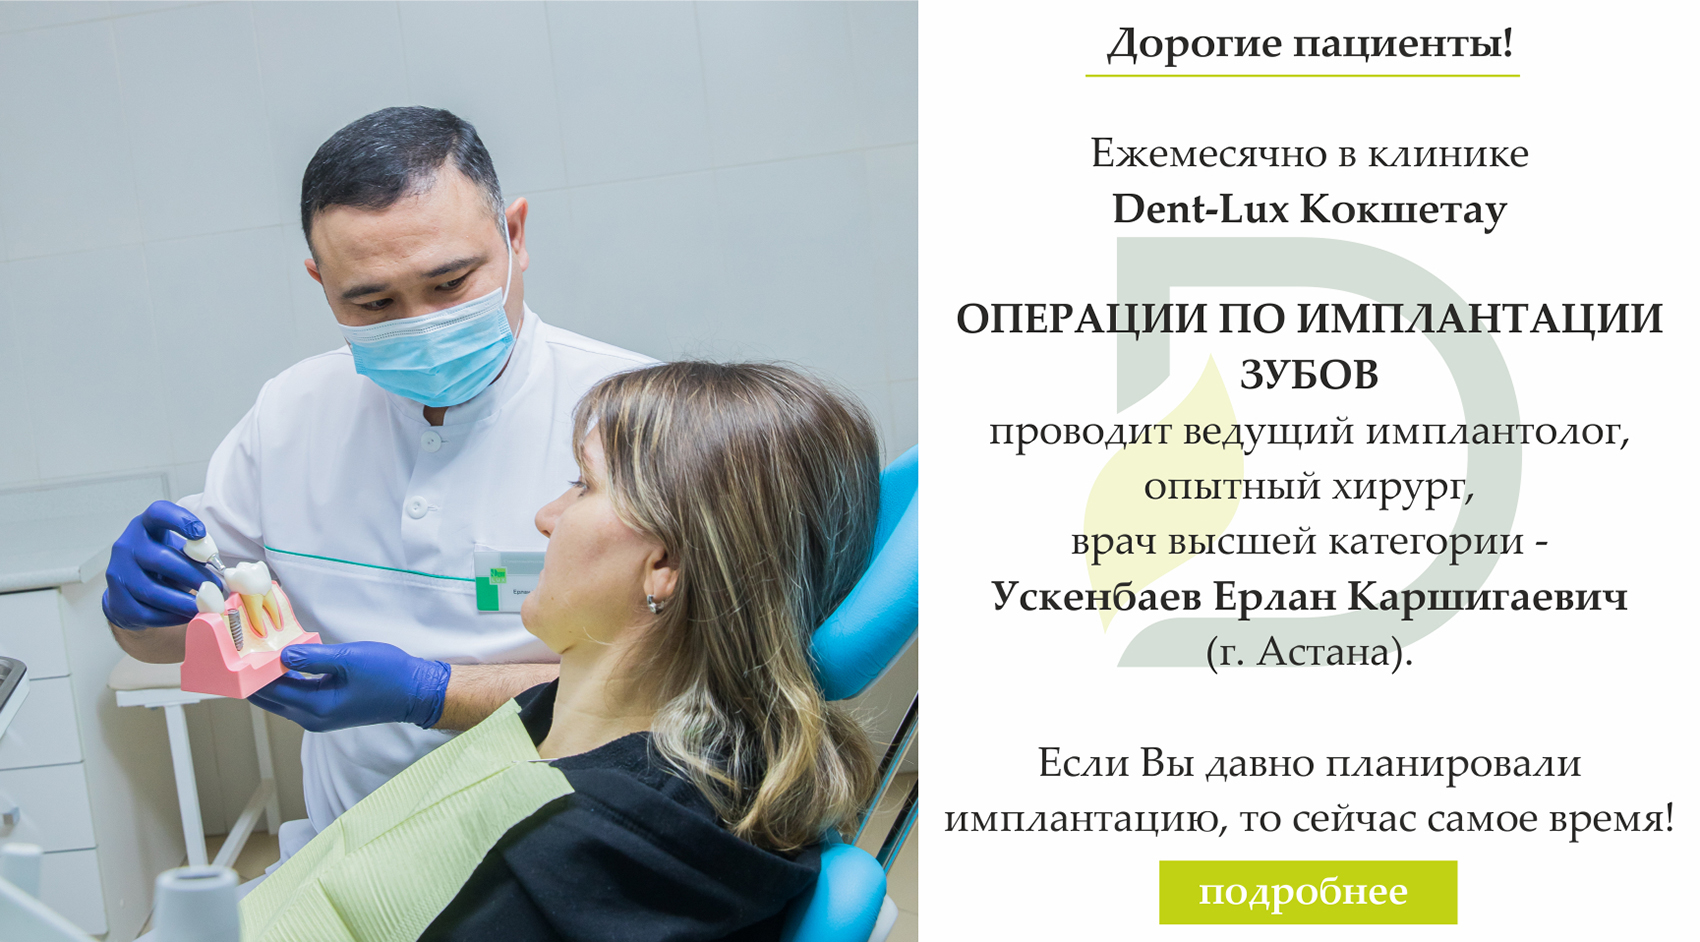 Сертификаты на стоматологические услугу от Dent Lux в Казахстане, фото 4